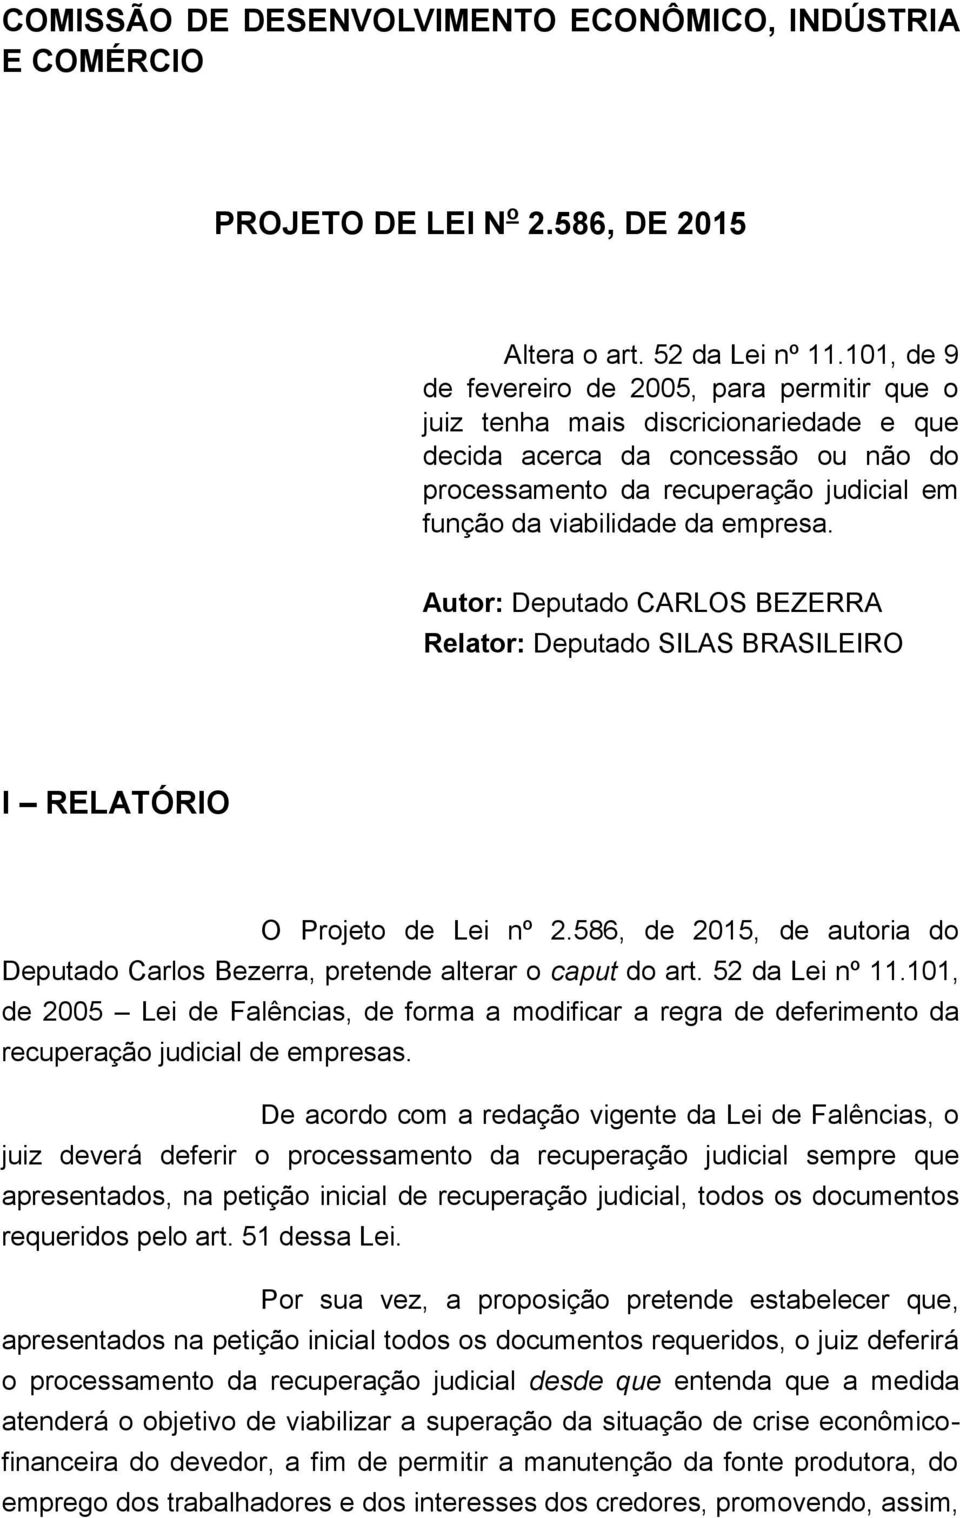 empresa. Autor: Deputado CARLOS BEZERRA Relator: Deputado SILAS BRASILEIRO I RELATÓRIO O Projeto de Lei nº 2.586, de 2015, de autoria do Deputado Carlos Bezerra, pretende alterar o caput do art.